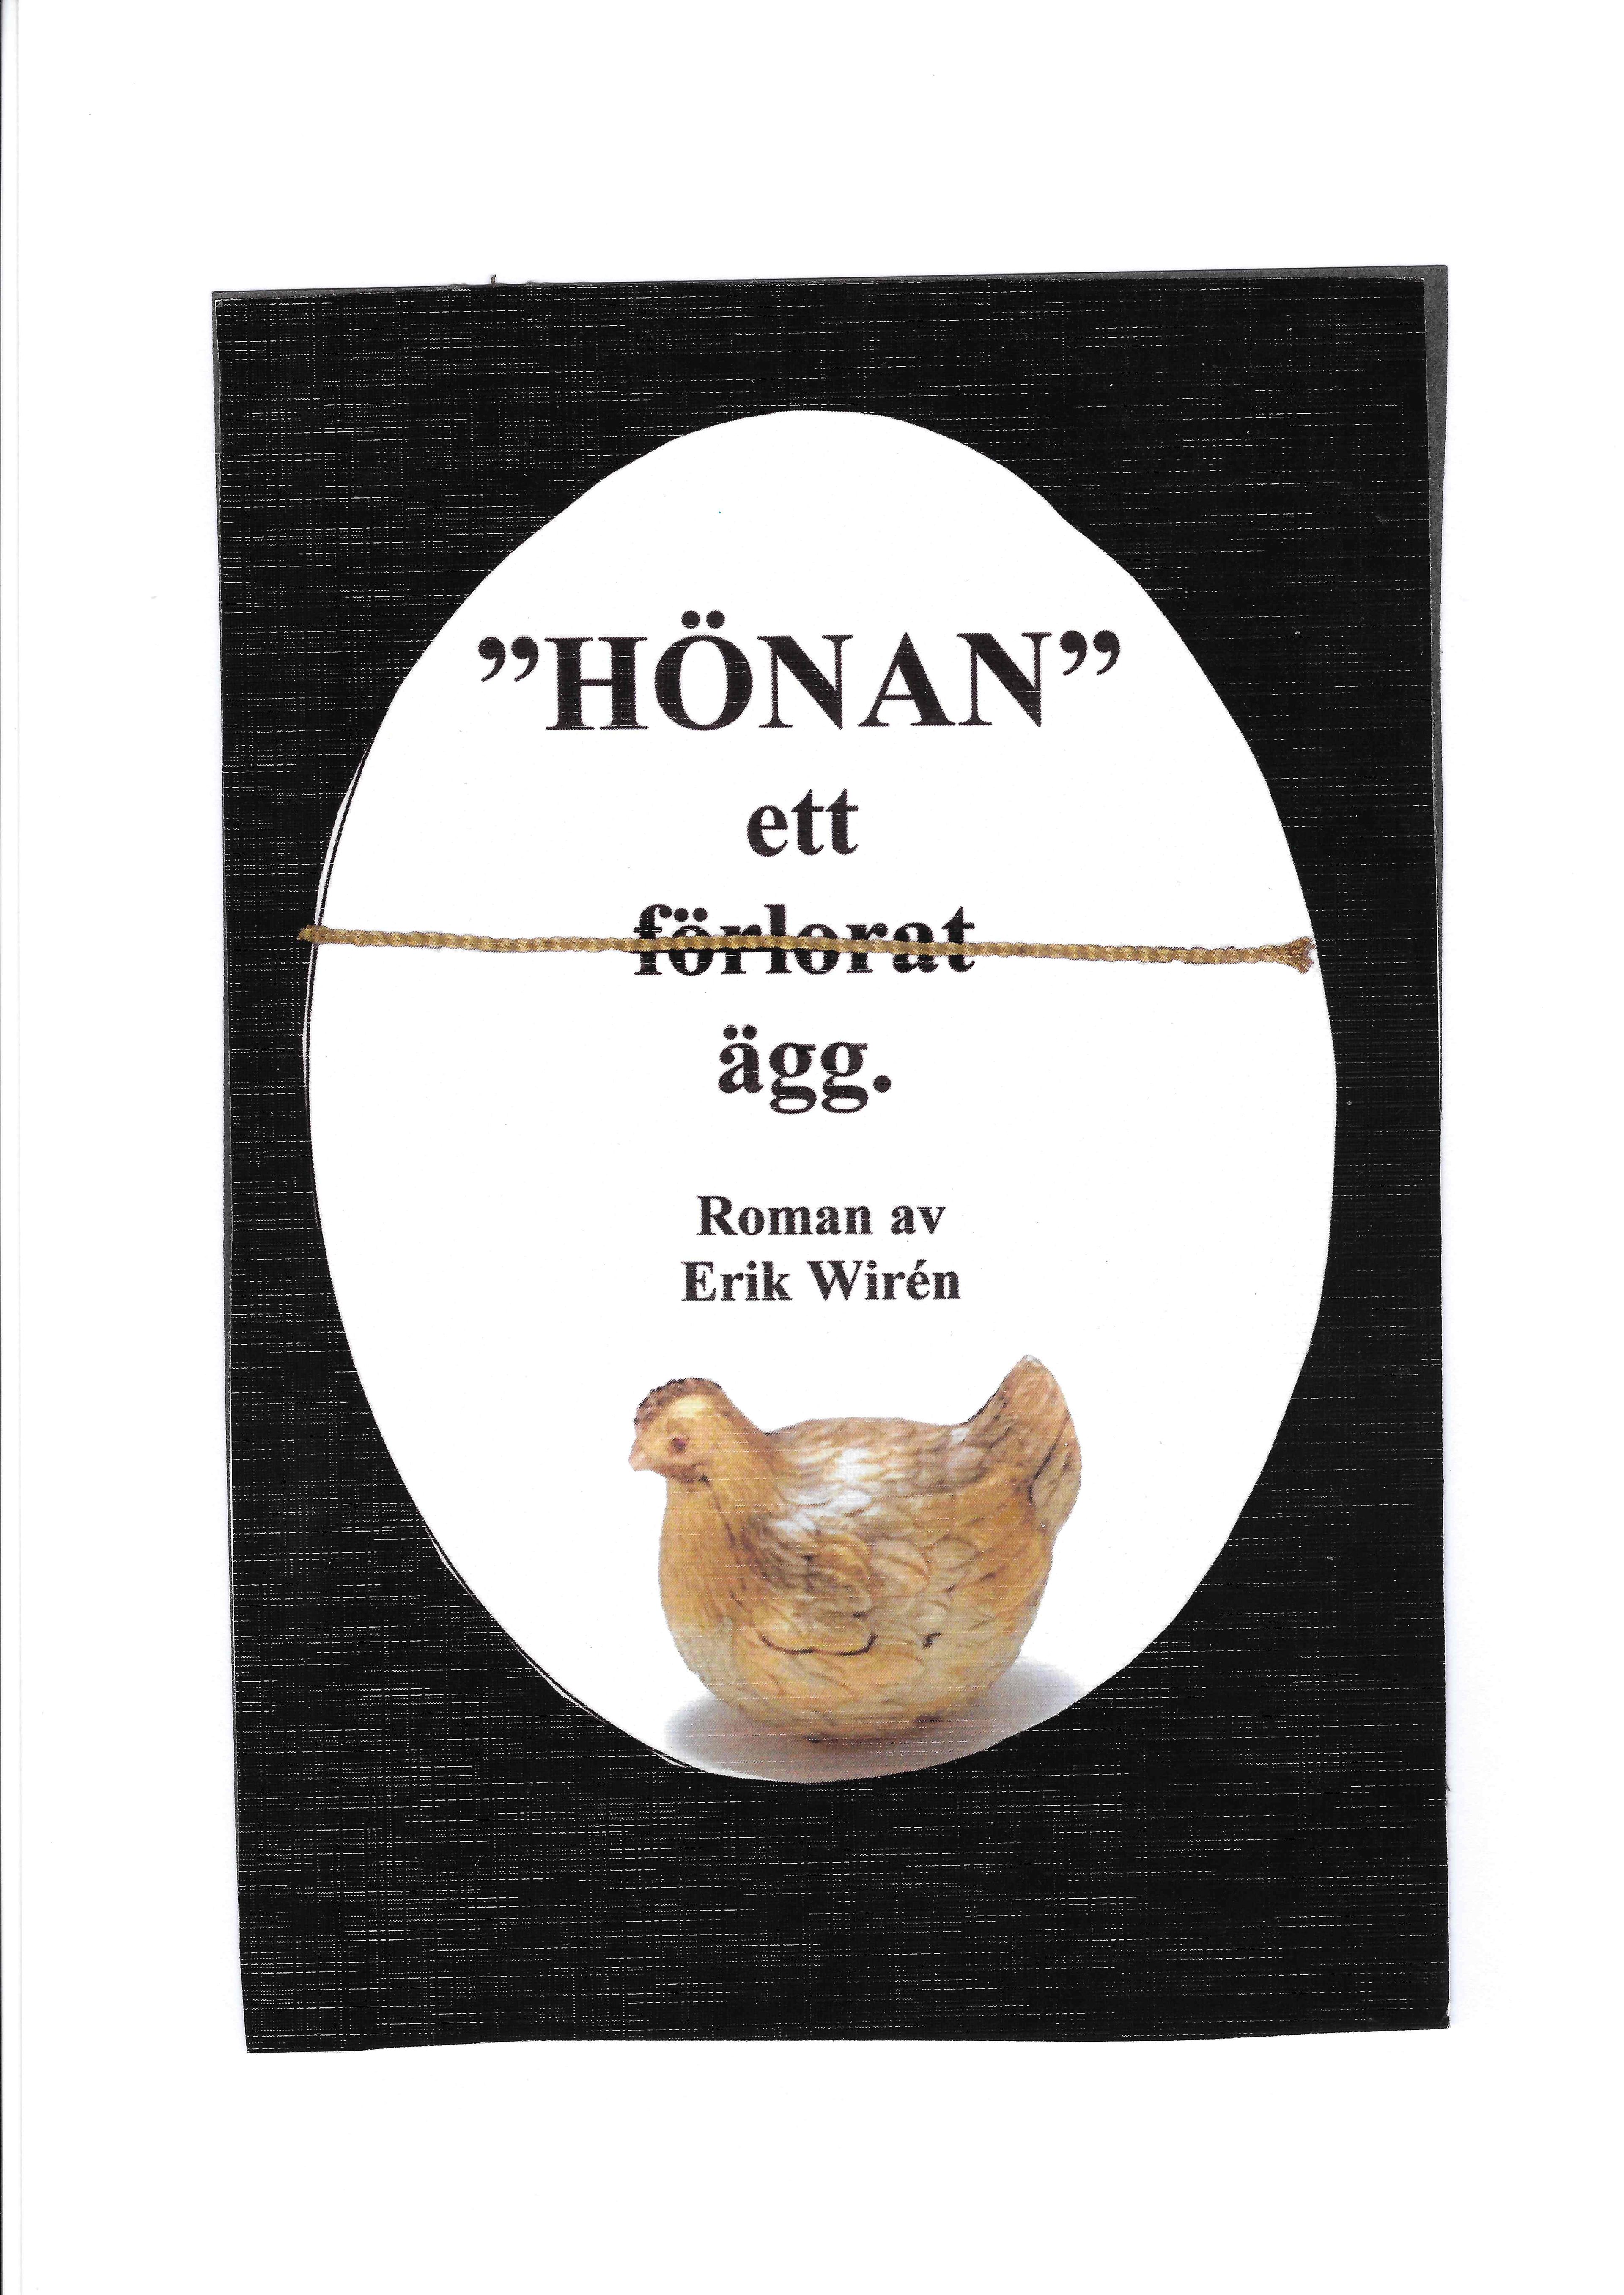 Hönan - ett (förlorat) ägg, eBook by Erik Wirén